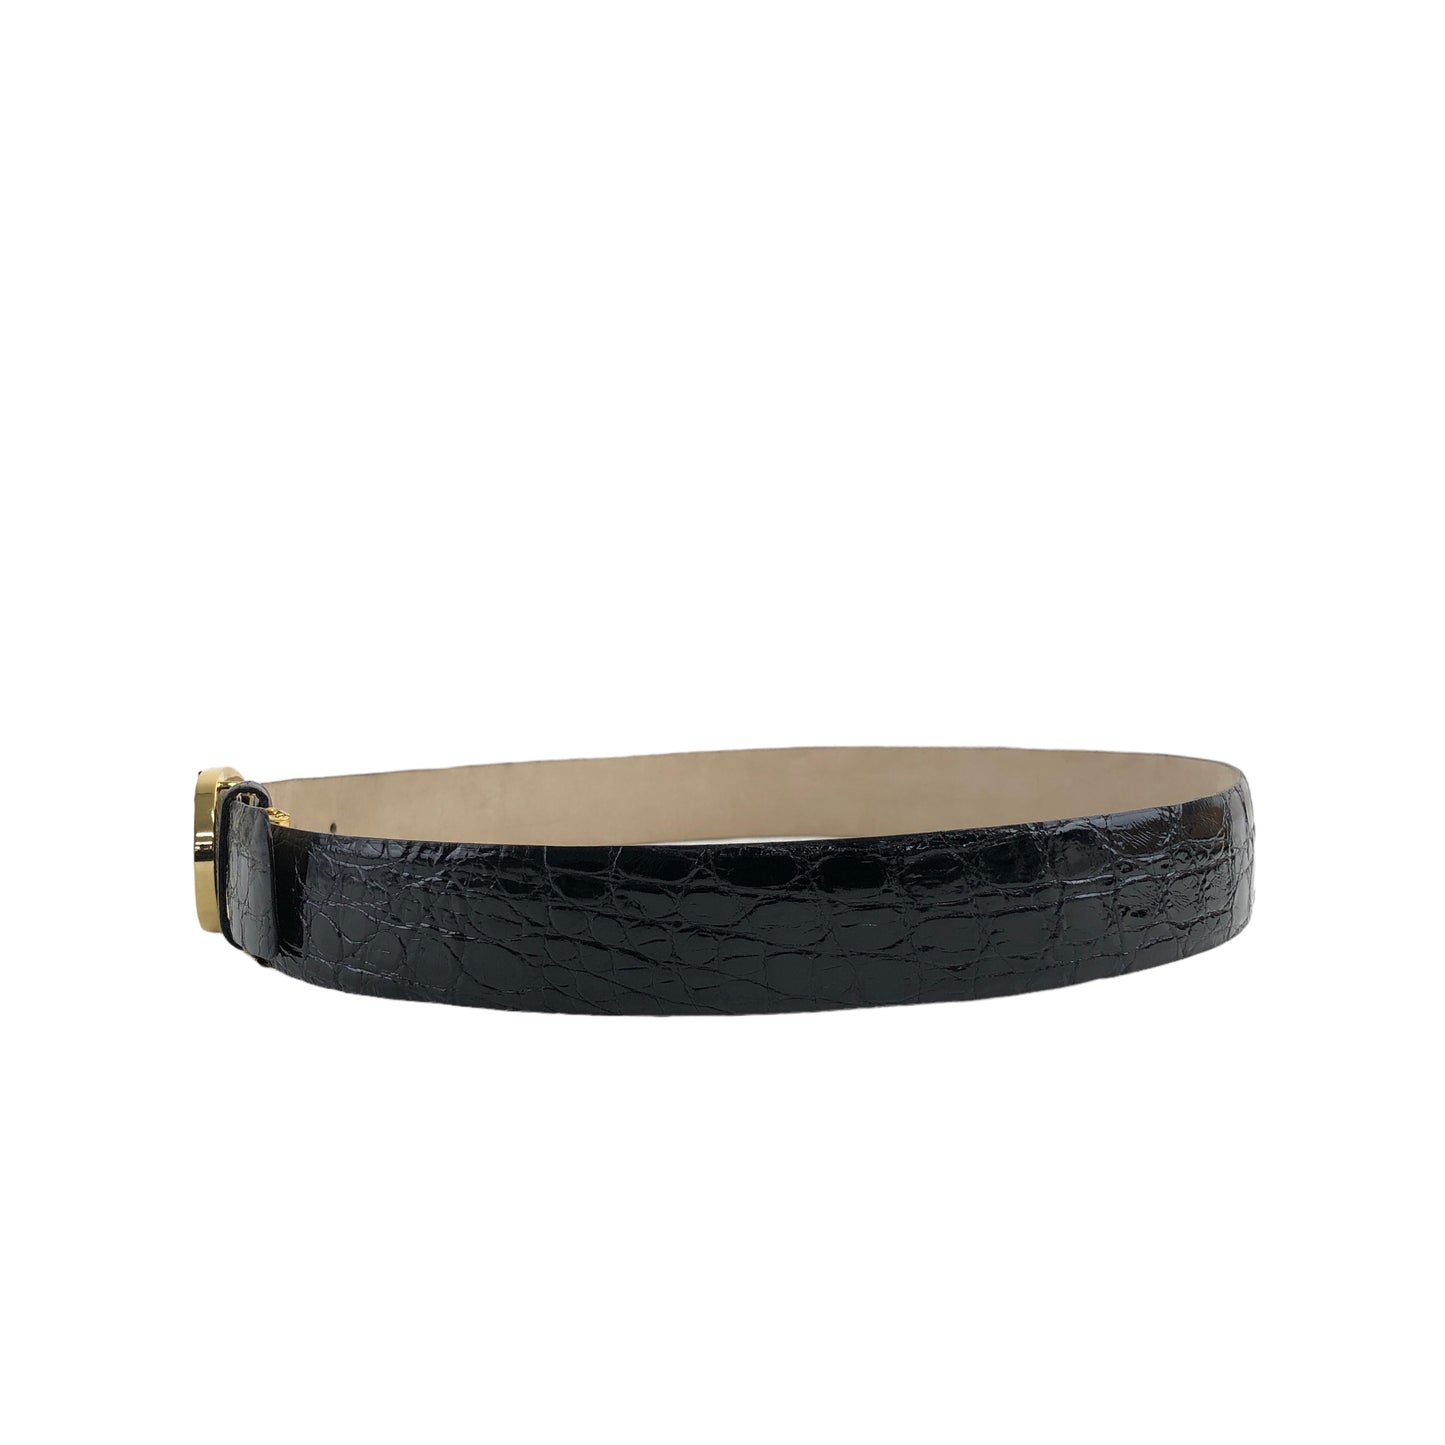 Christian Dior Buckle Leather Belt Black,Gold Vintage 3yfefk